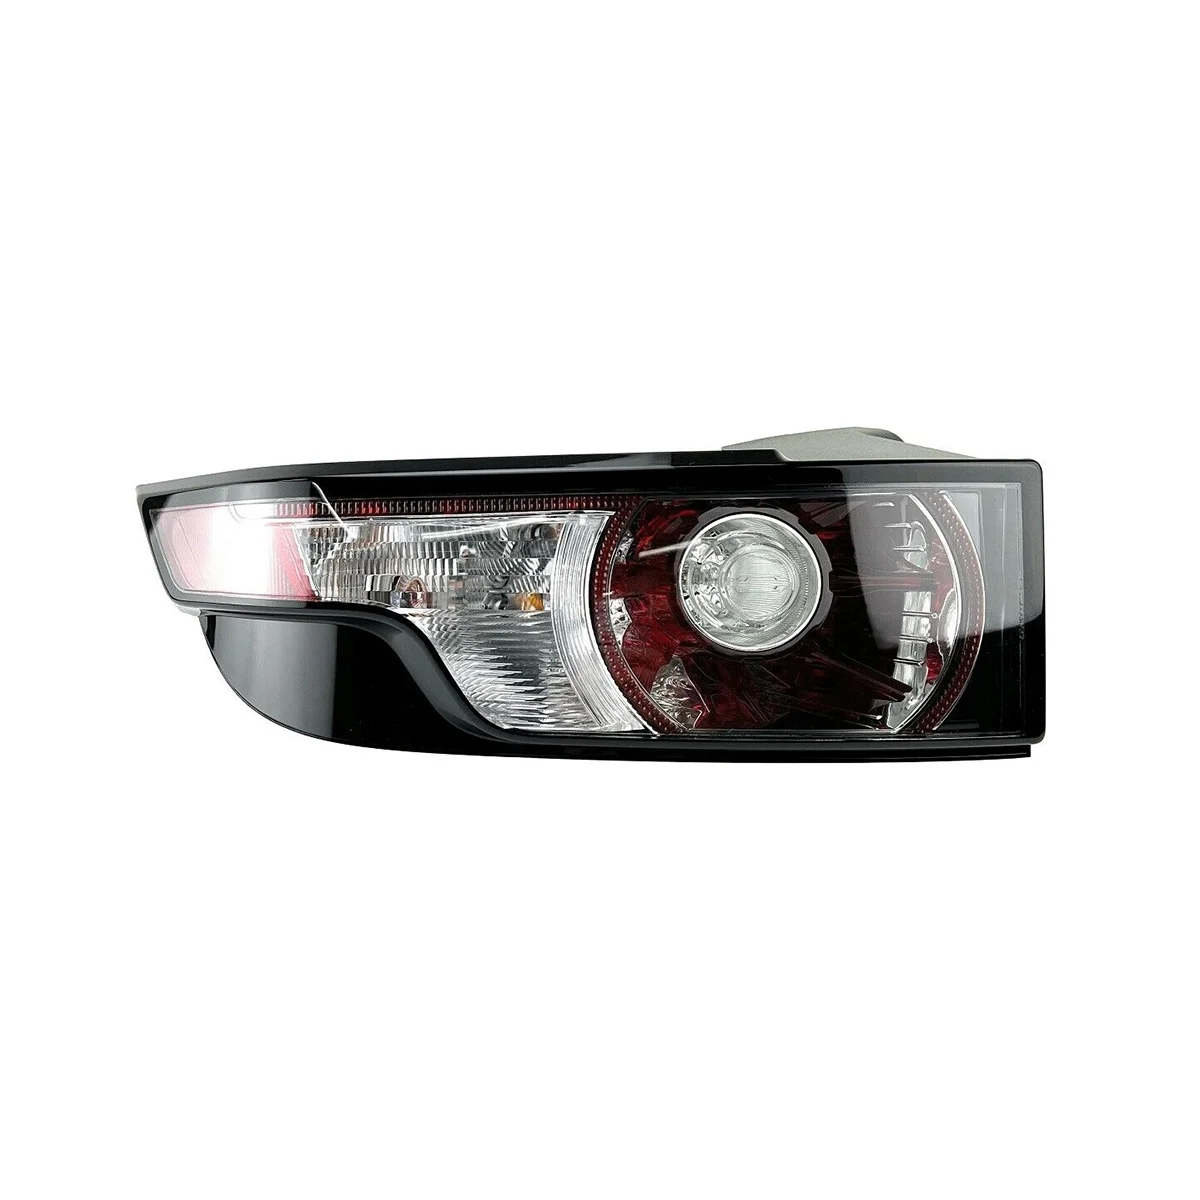 

Левый задний фонарь LR074813, задний фонарь в сборе, задний указатель поворота для Land Rover Range Rover Evoque 2012-2015